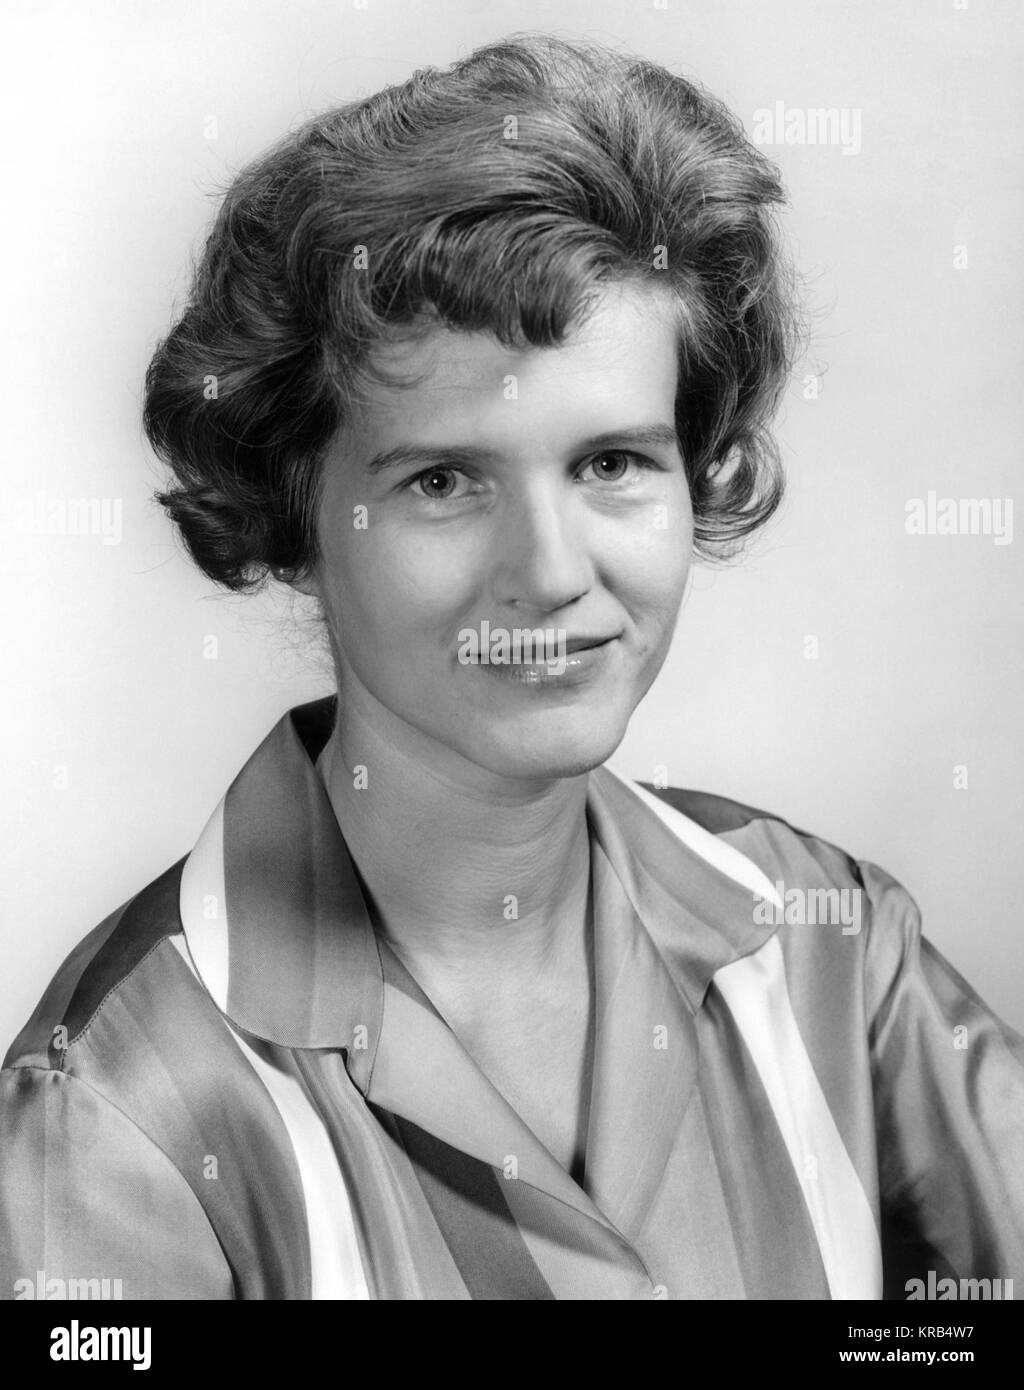 Dies ist ein portrait VON MARIA VON BRAUN, die Ehefrau des berühmten Marshall Space Flight Director Wernher von Braun. Maria von Braun 6330121 bearbeitet Stockfoto